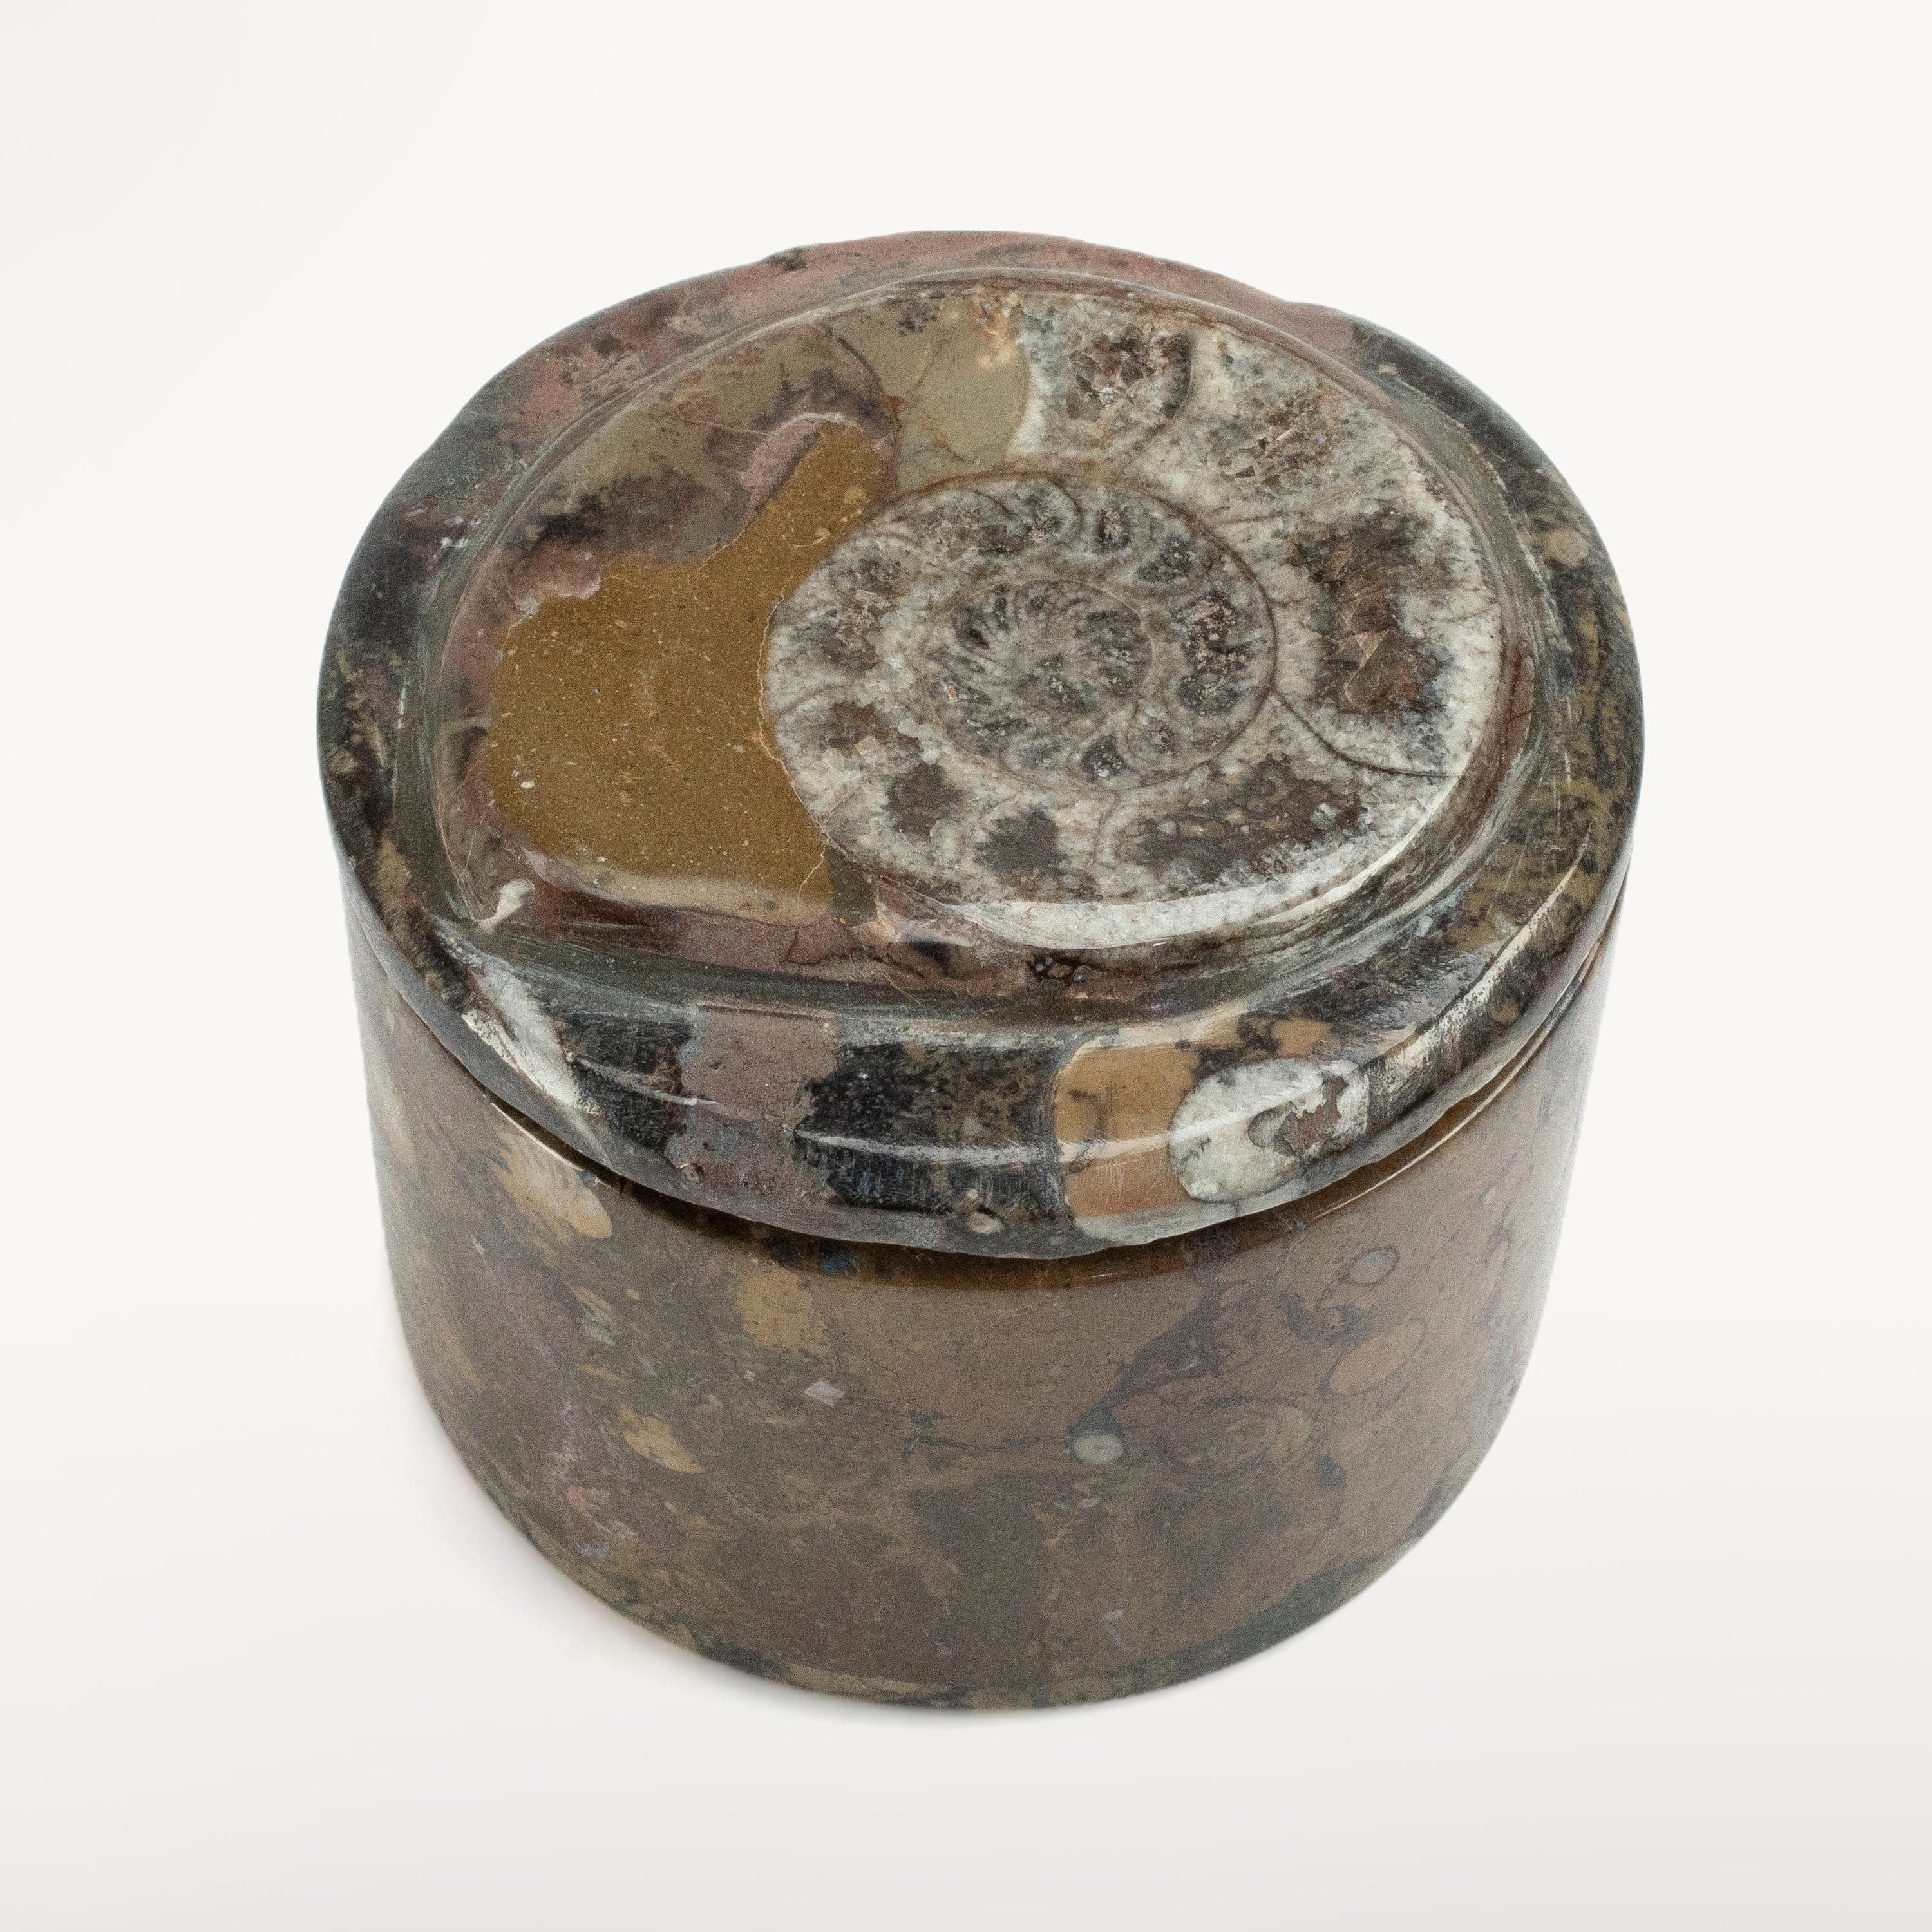 Kalifano Ammonites & Orthoceras Natural Ammonite Vanity Box from Morocco - Round & Brown SVA-AMM-BN3